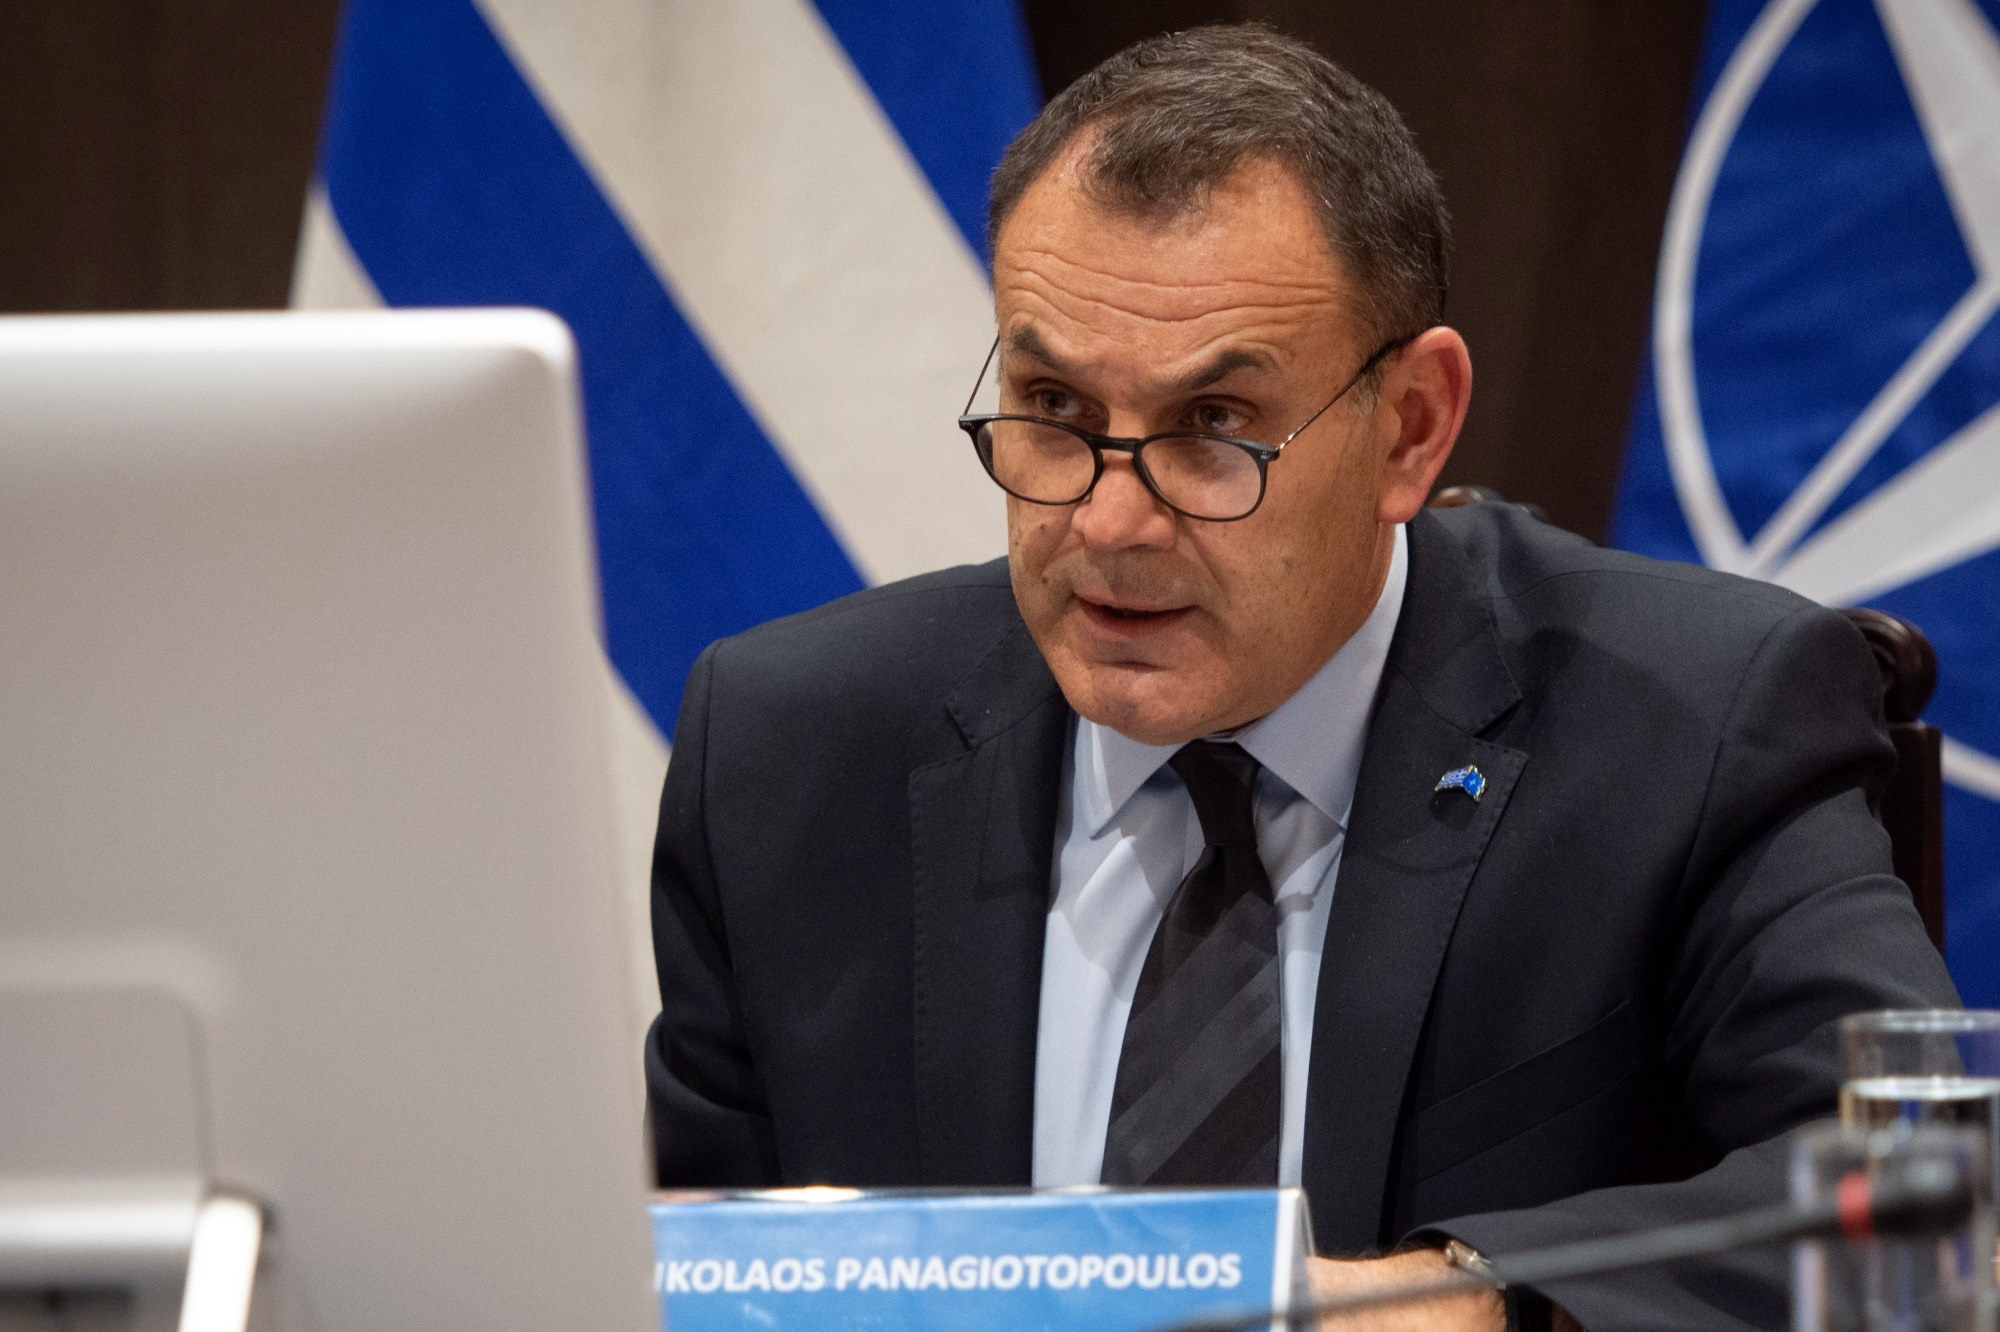 Ν.Παναγιωτόπουλος και το Υφυπουργείο: «Μια ισχυρή Ελλάδα απαιτεί ικανές Ένοπλες Δυνάμεις – Δεν μπορούν να υπάρξουν χωρίς ανταγωνιστική αμυντική βιομηχανία»